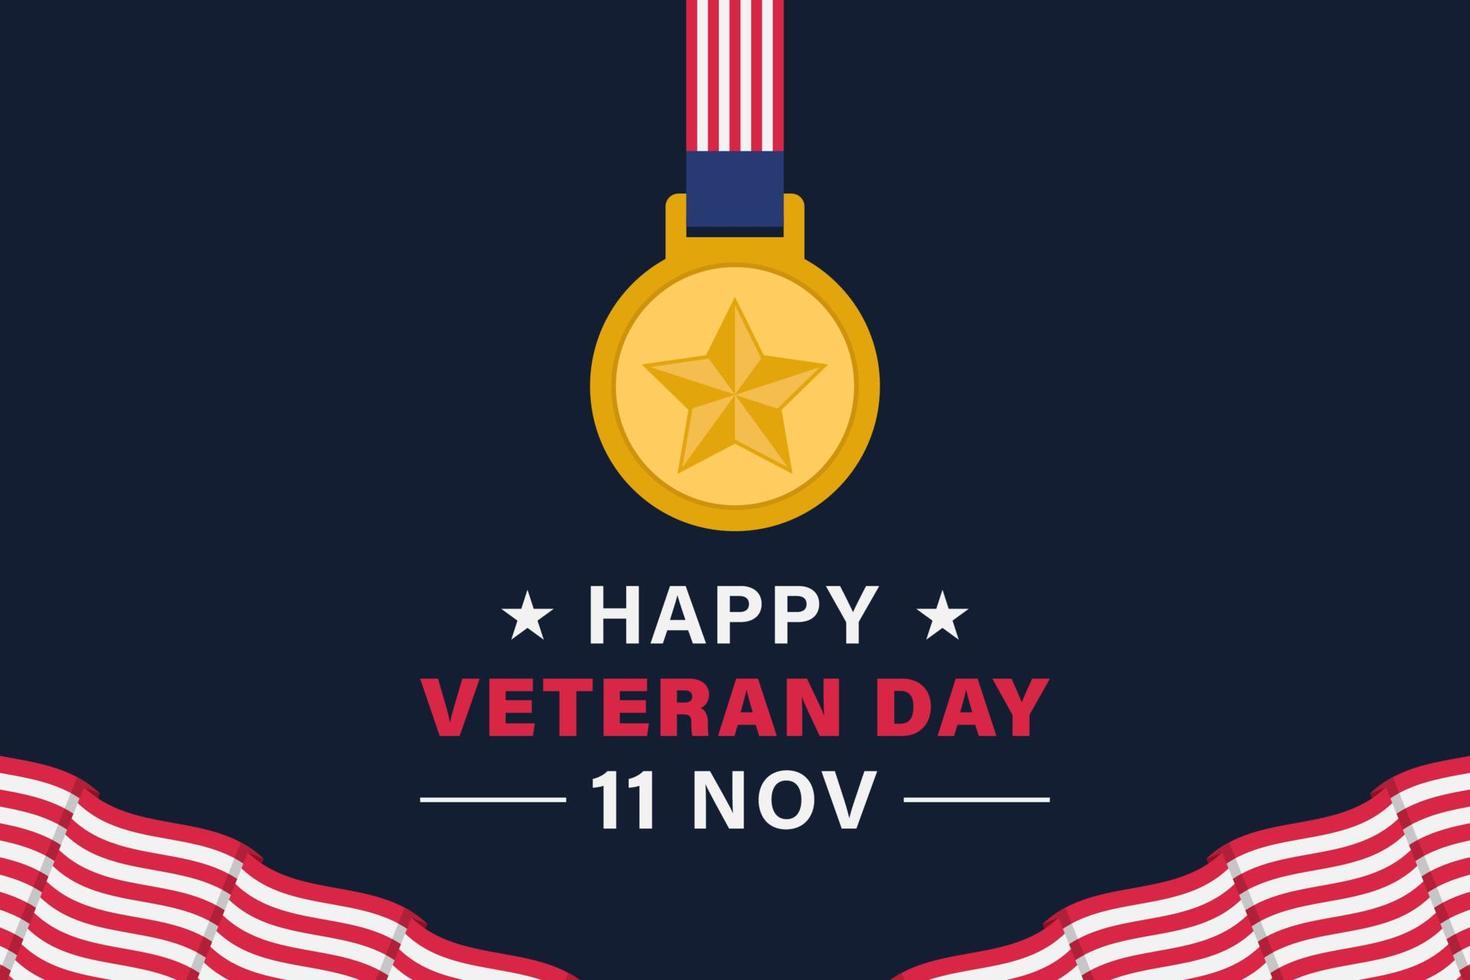 cartaz de banner de fundo vetorial do dia do veterano vetor